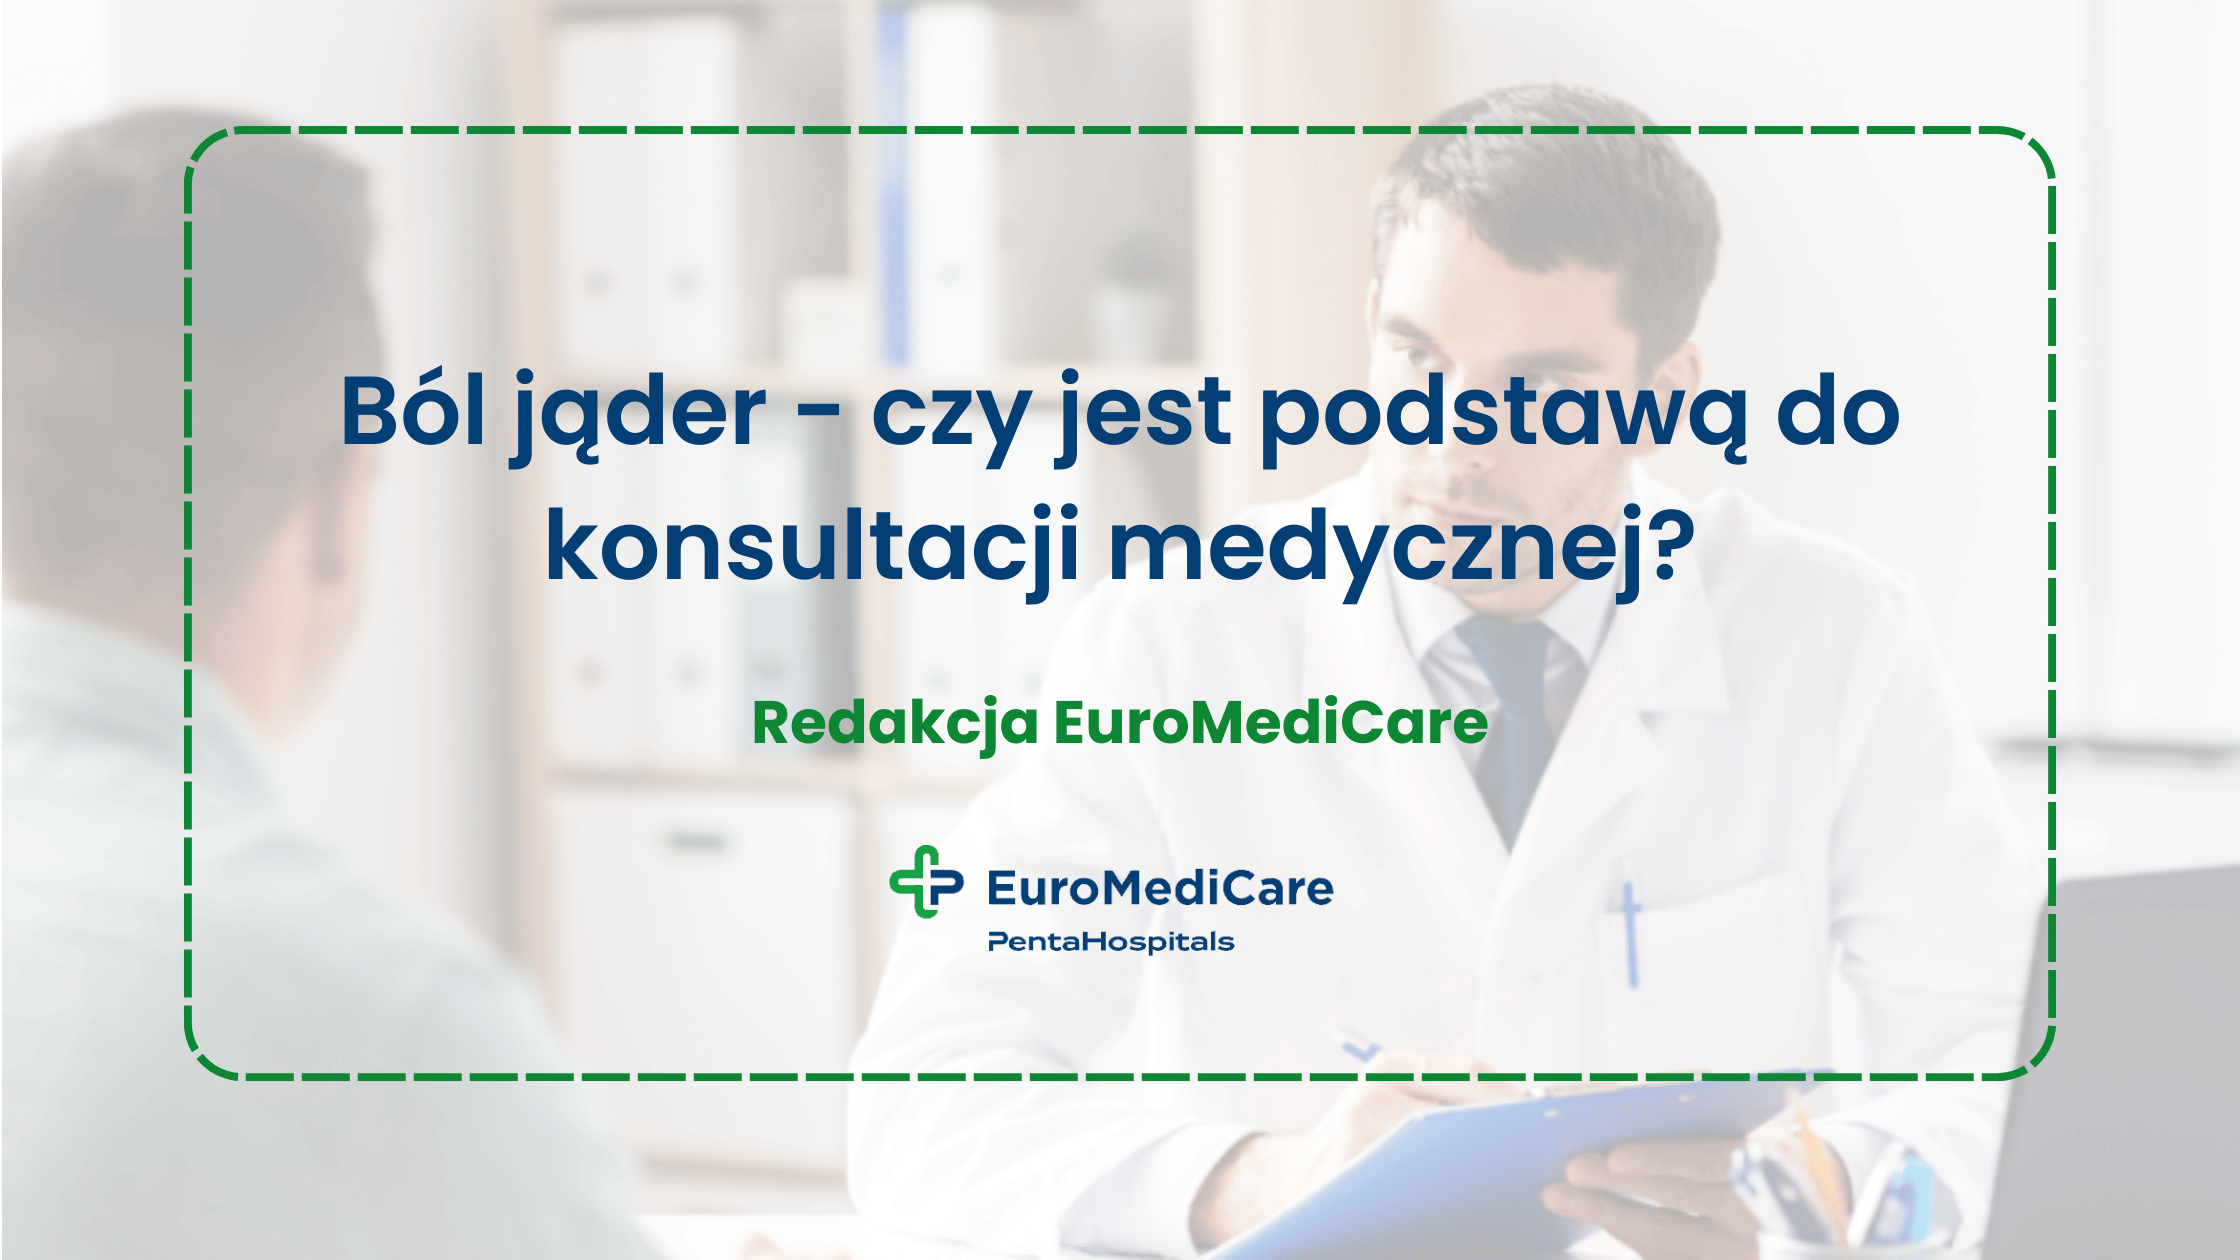 Ból jąder - czy jest podstawą do konsultacji medycznej? - blog euromedicare.pl